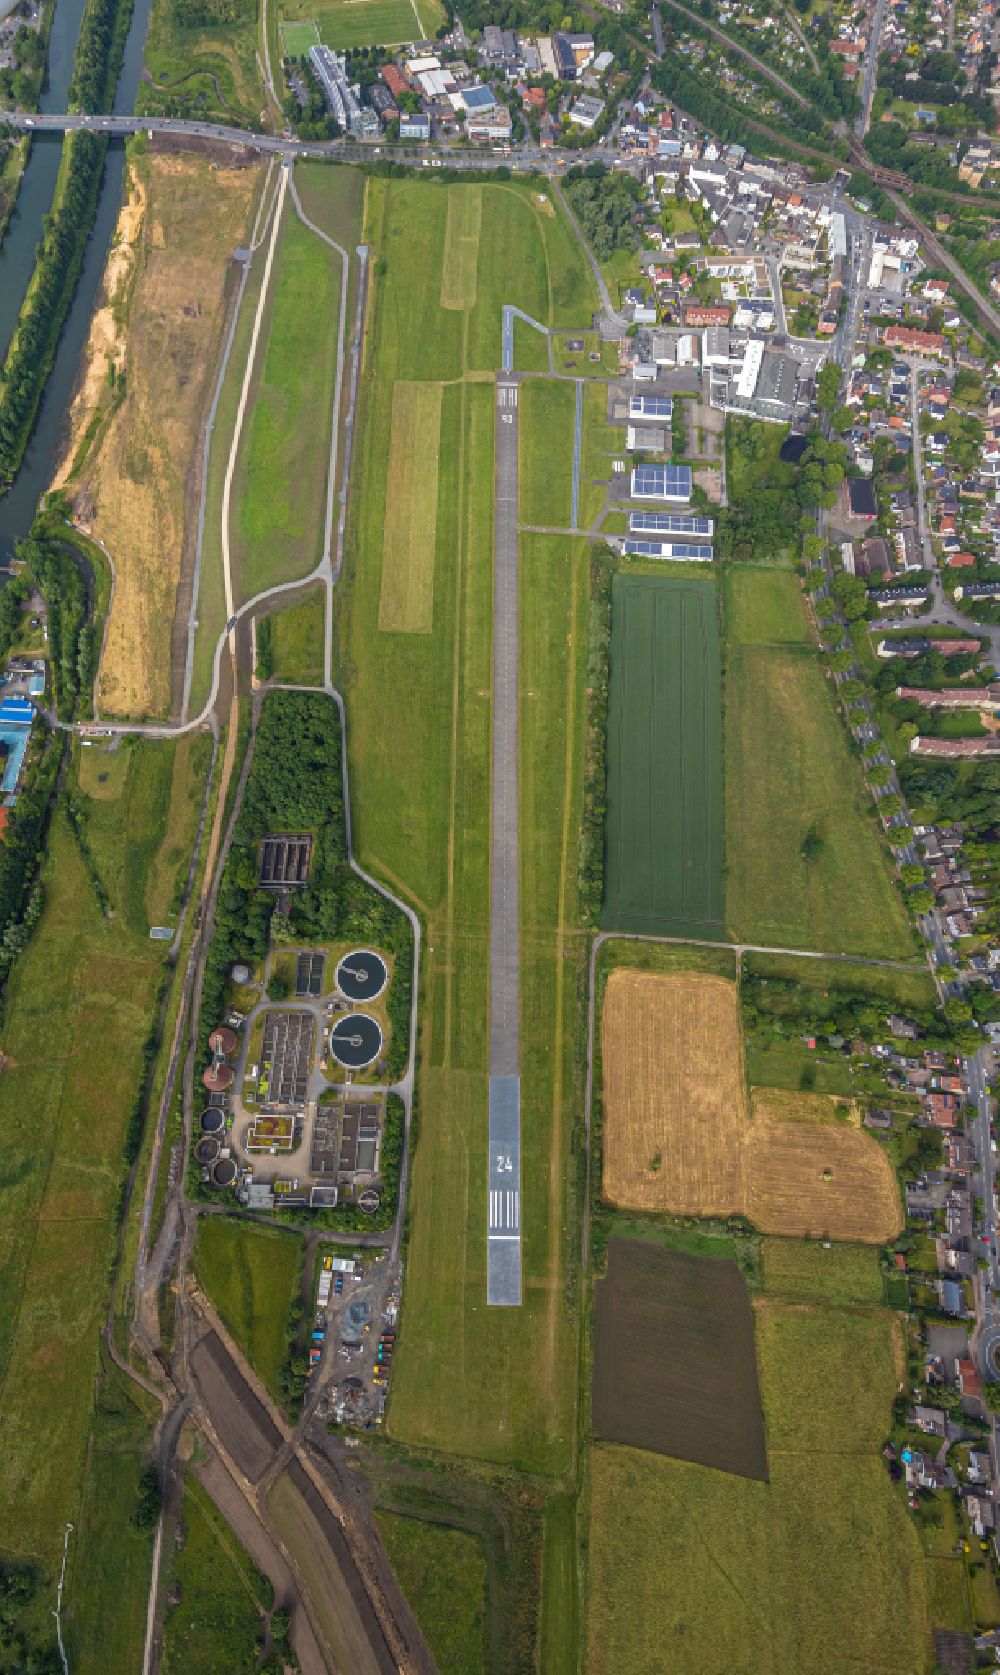 Luftbild Hamm (Westfalen) - Flugplatz Heessen und Auenlandschaft des Erlebnisraum Lippe am Fluss Lippe in Hamm im Bundesland Nordrhein-Westfalen, Deutschland